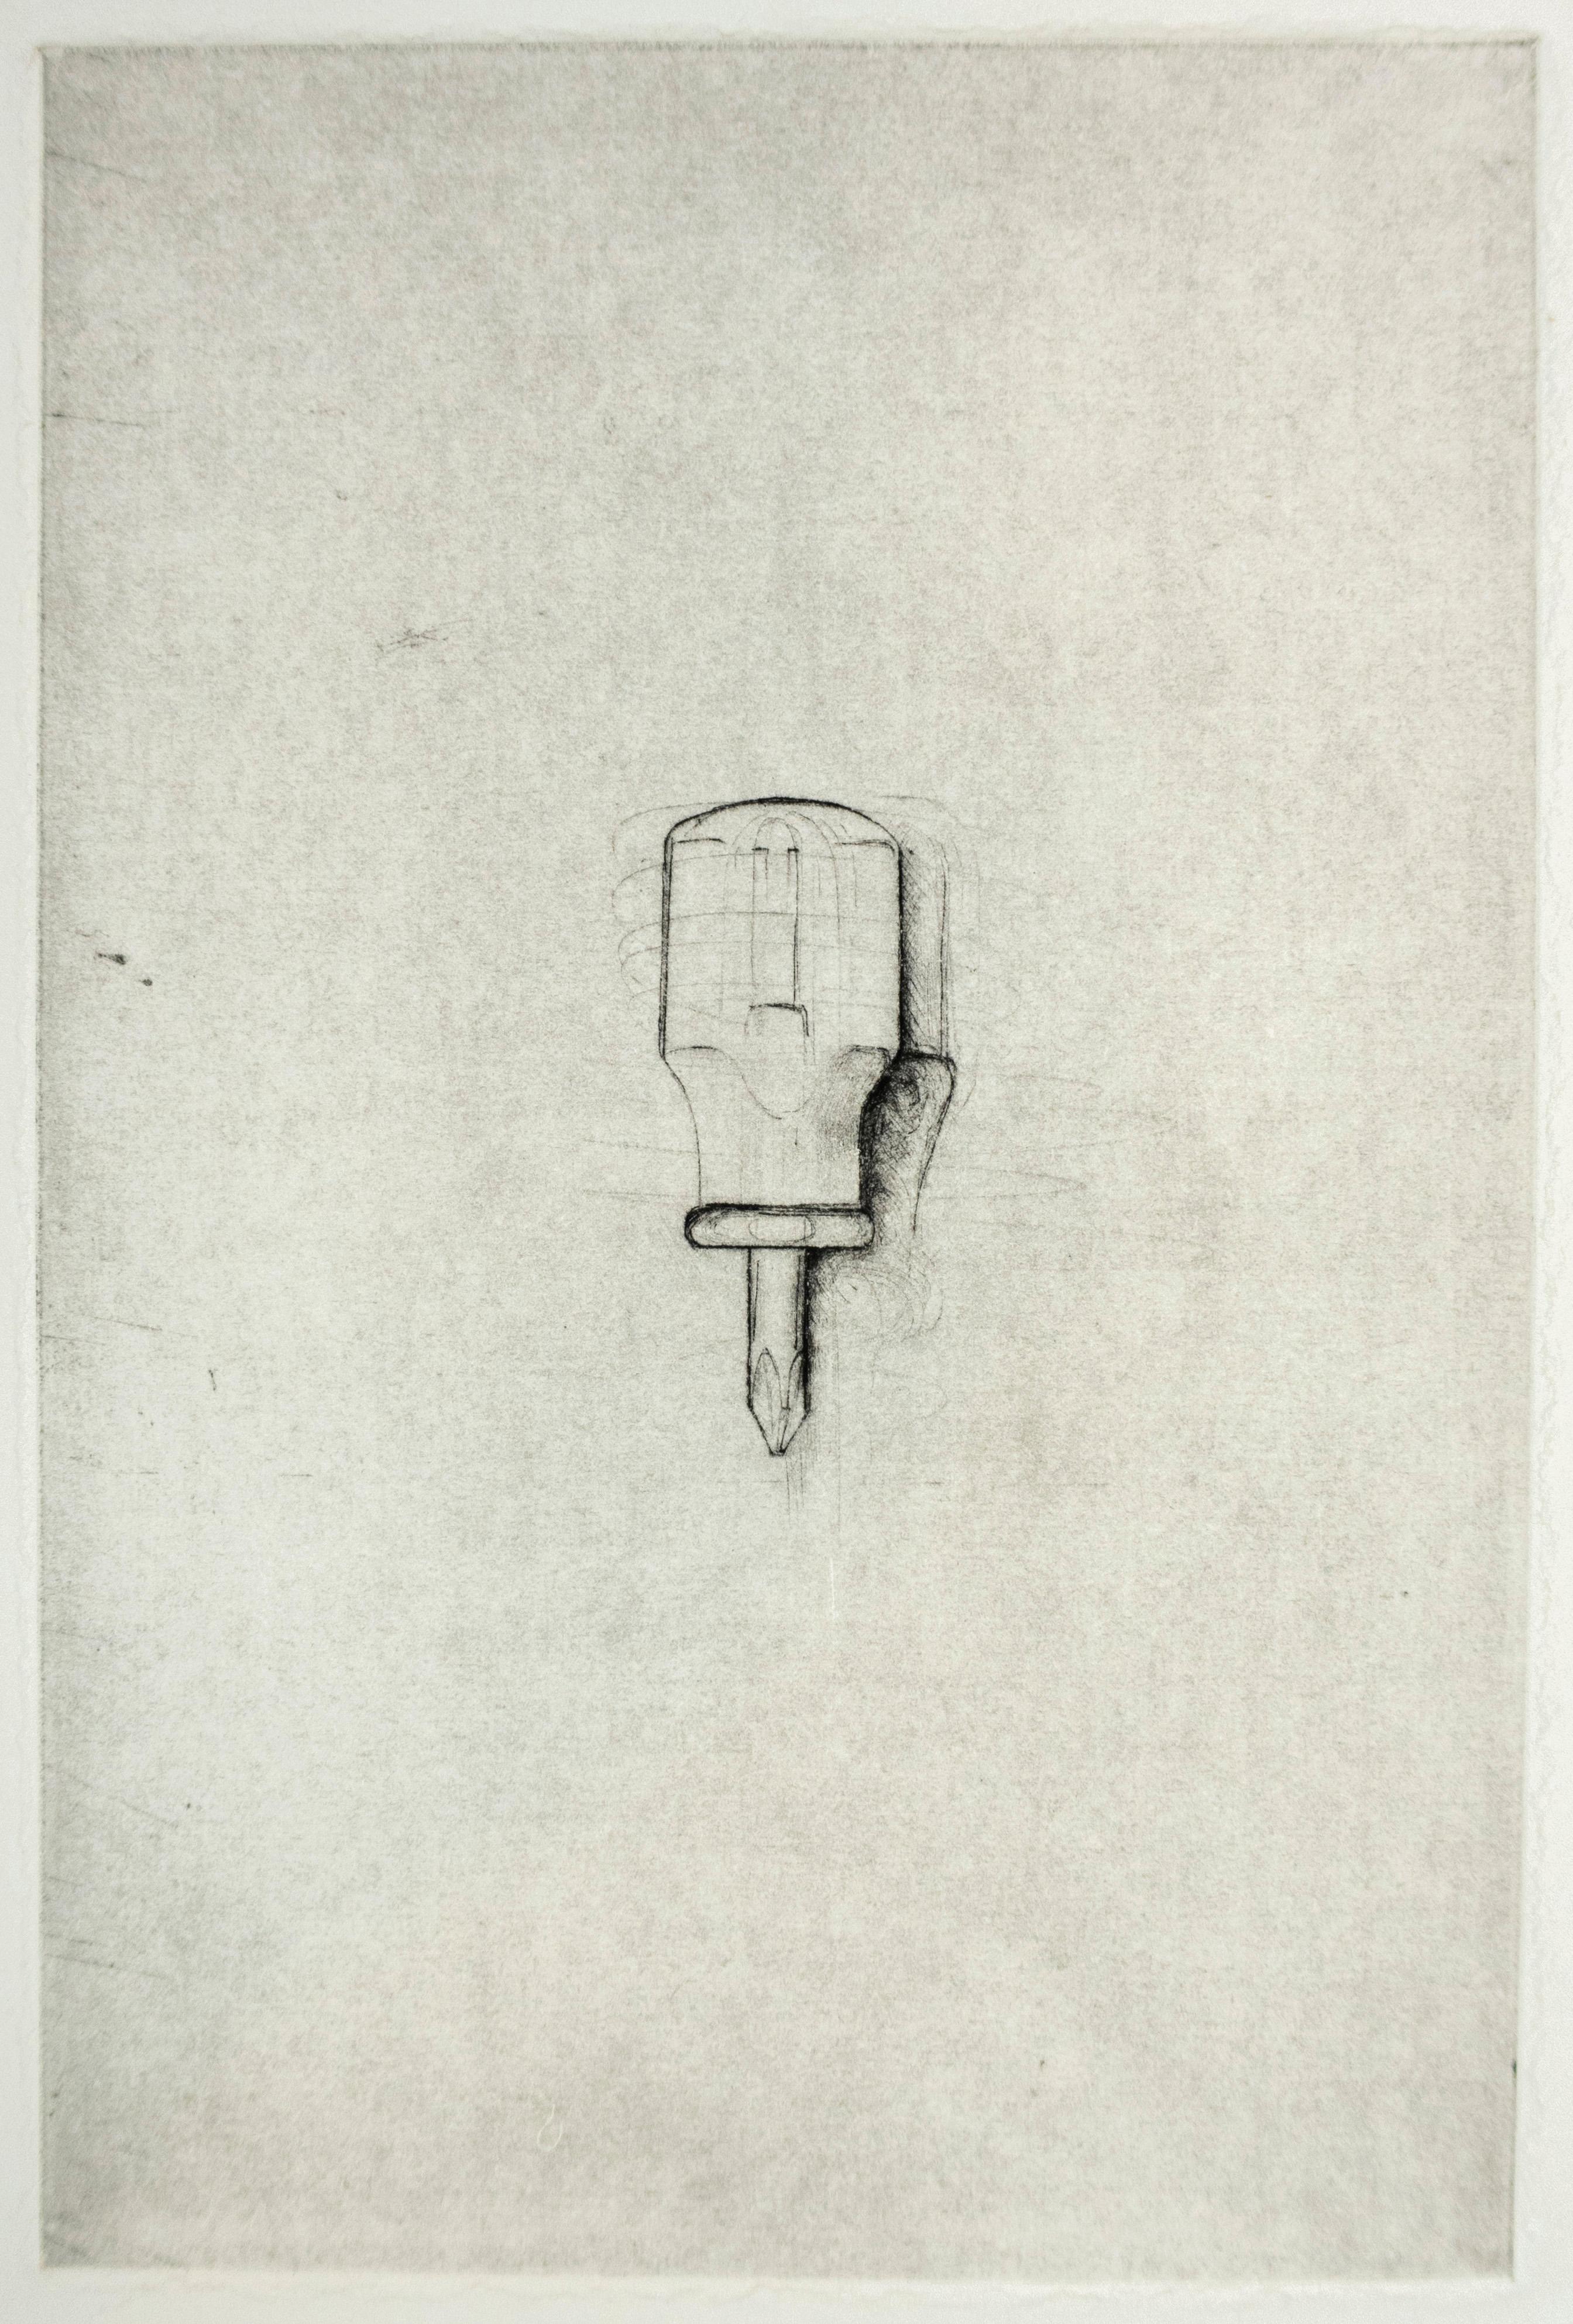 L'outil à main est sans doute le motif le plus emblématique de Jim Dine. Minutieusement catalogués en rangs comme des spécimens scientifiques ou esquissés individuellement, marteaux, alènes, brosses, scies et tournevis revêtent un symbolisme